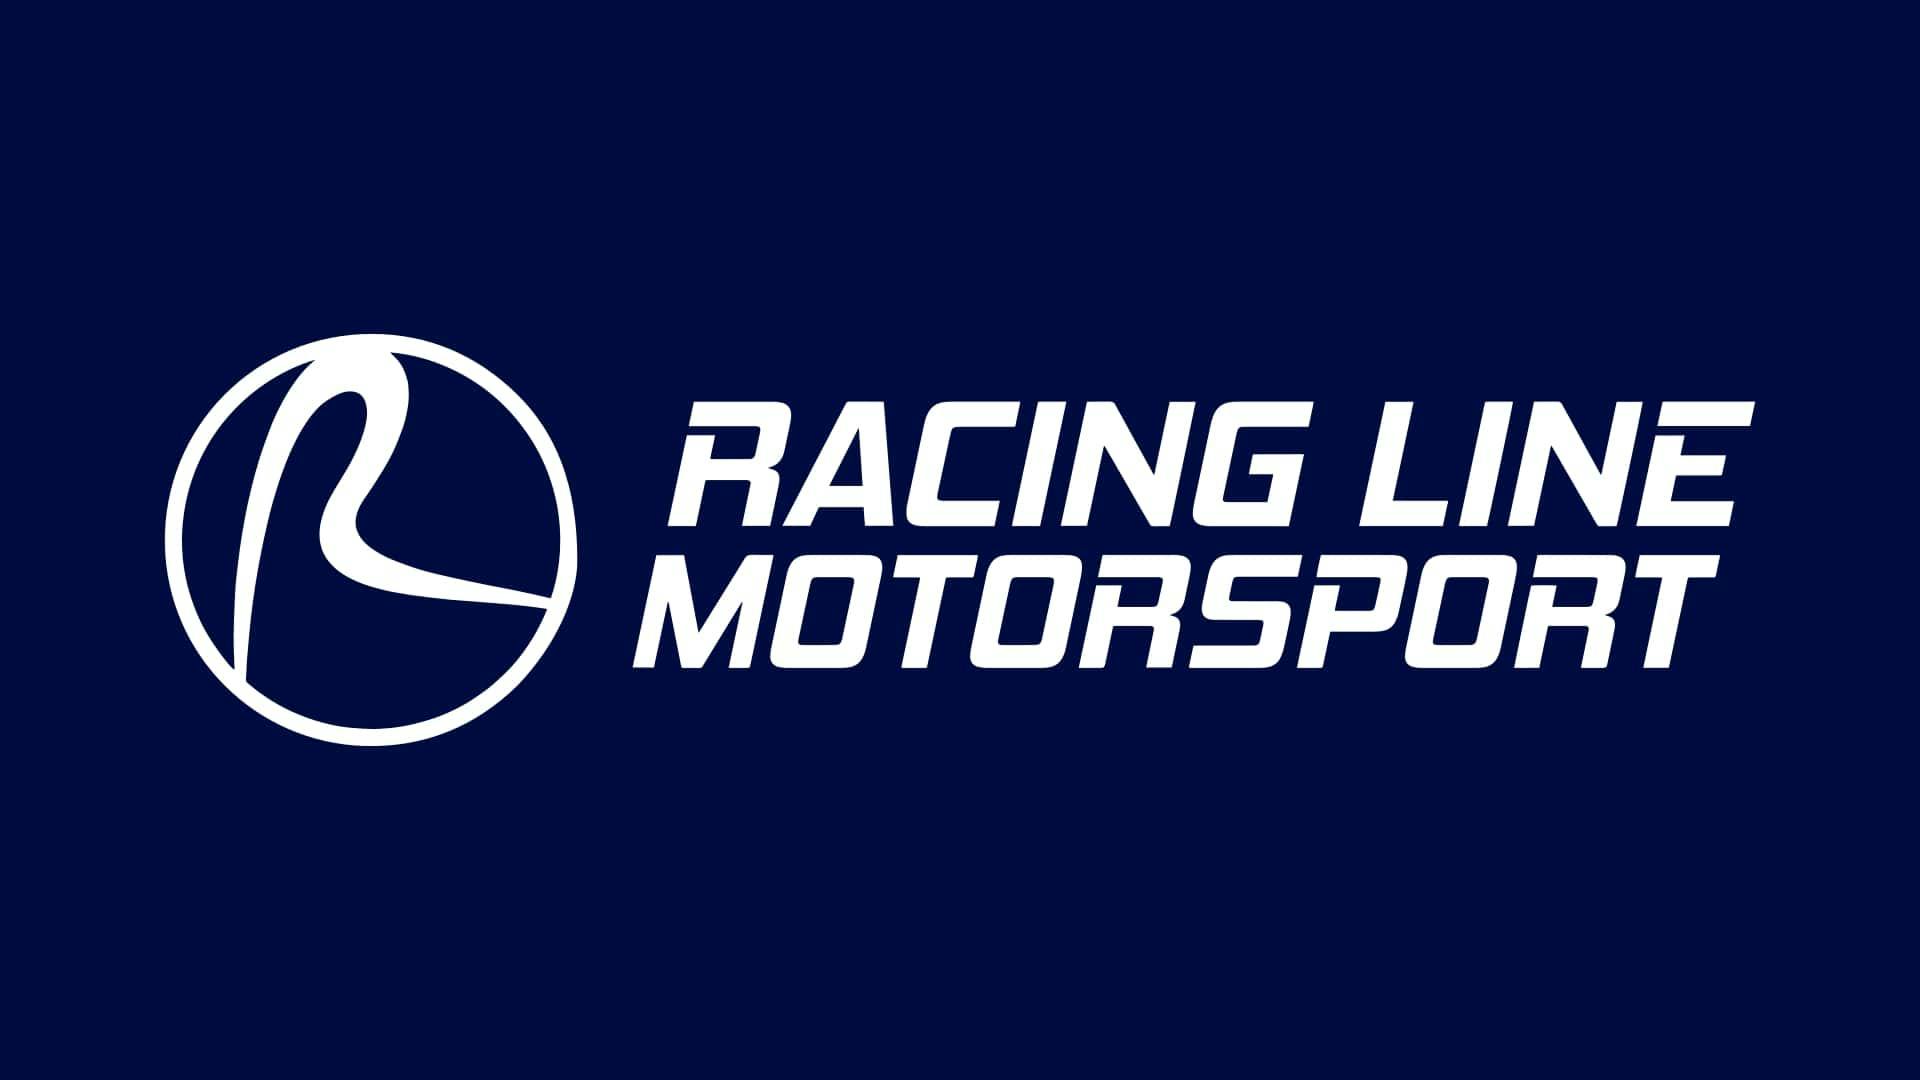 Racing Line Motorsport